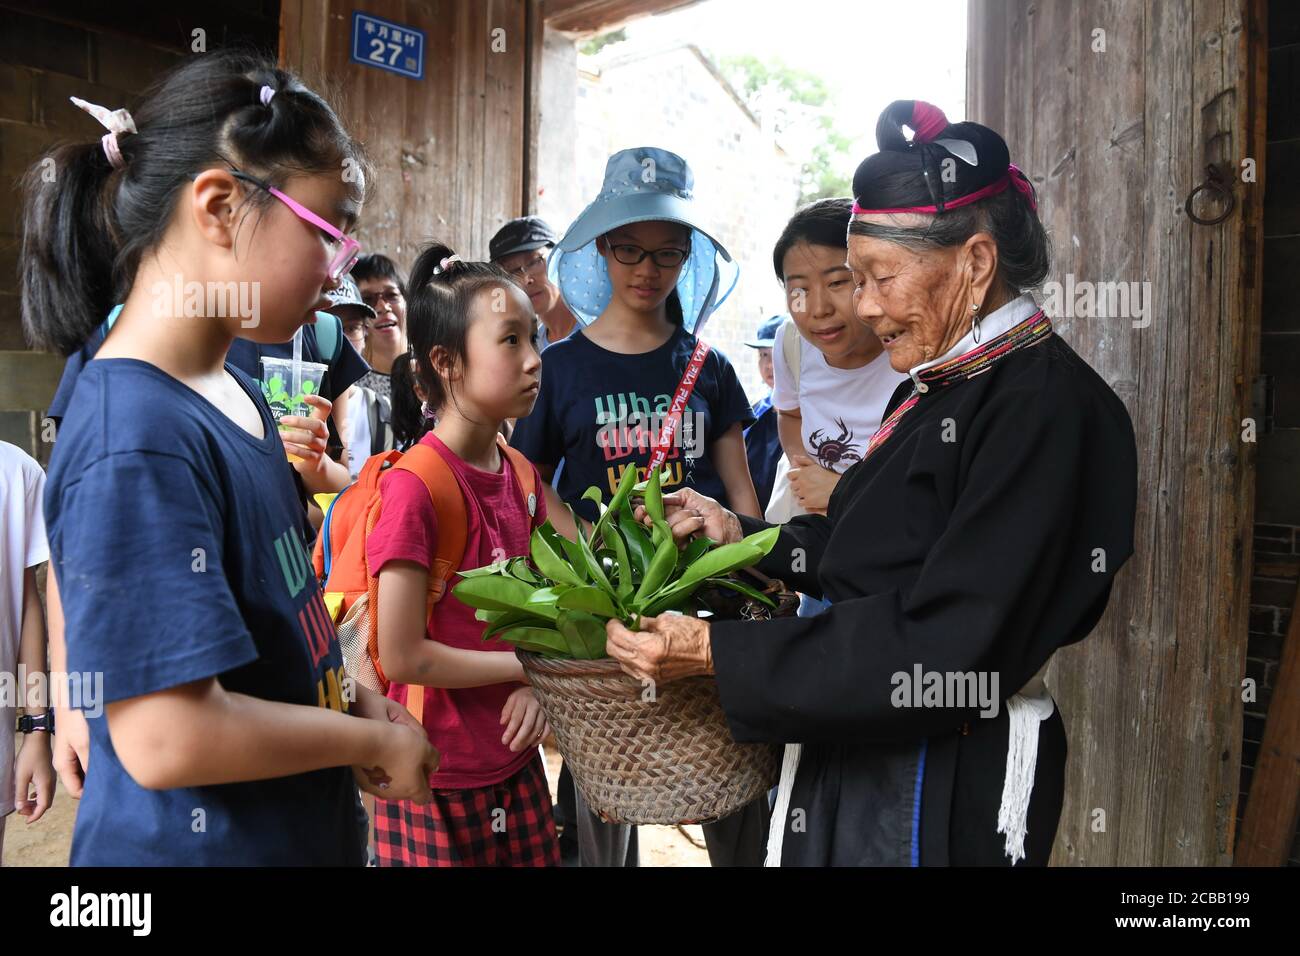 (200812) -- NINGDE, 12 agosto 2020 (Xinhua) -- Zhong Lianjiao (1st R) introduce una specie di pianta ai turisti al villaggio di Banyueli nella contea di Xiapu, nella provincia del Fujian della Cina sudorientale, 5 agosto 2020. È comune vedere Zhong Lianjiao, una donna di 89 anni del gruppo etnico sempre in costumi tradizionali lei, introdurre le culture del suo gruppo etnico ai turisti che visitano l'antico villaggio di Banyueli. Vive nel villaggio per decenni, Zhong si è adoperata per promuovere il turismo del villaggio introducendo le culture locali ai turisti. Banyueli è un villaggio dove reliquie culturali e Foto Stock